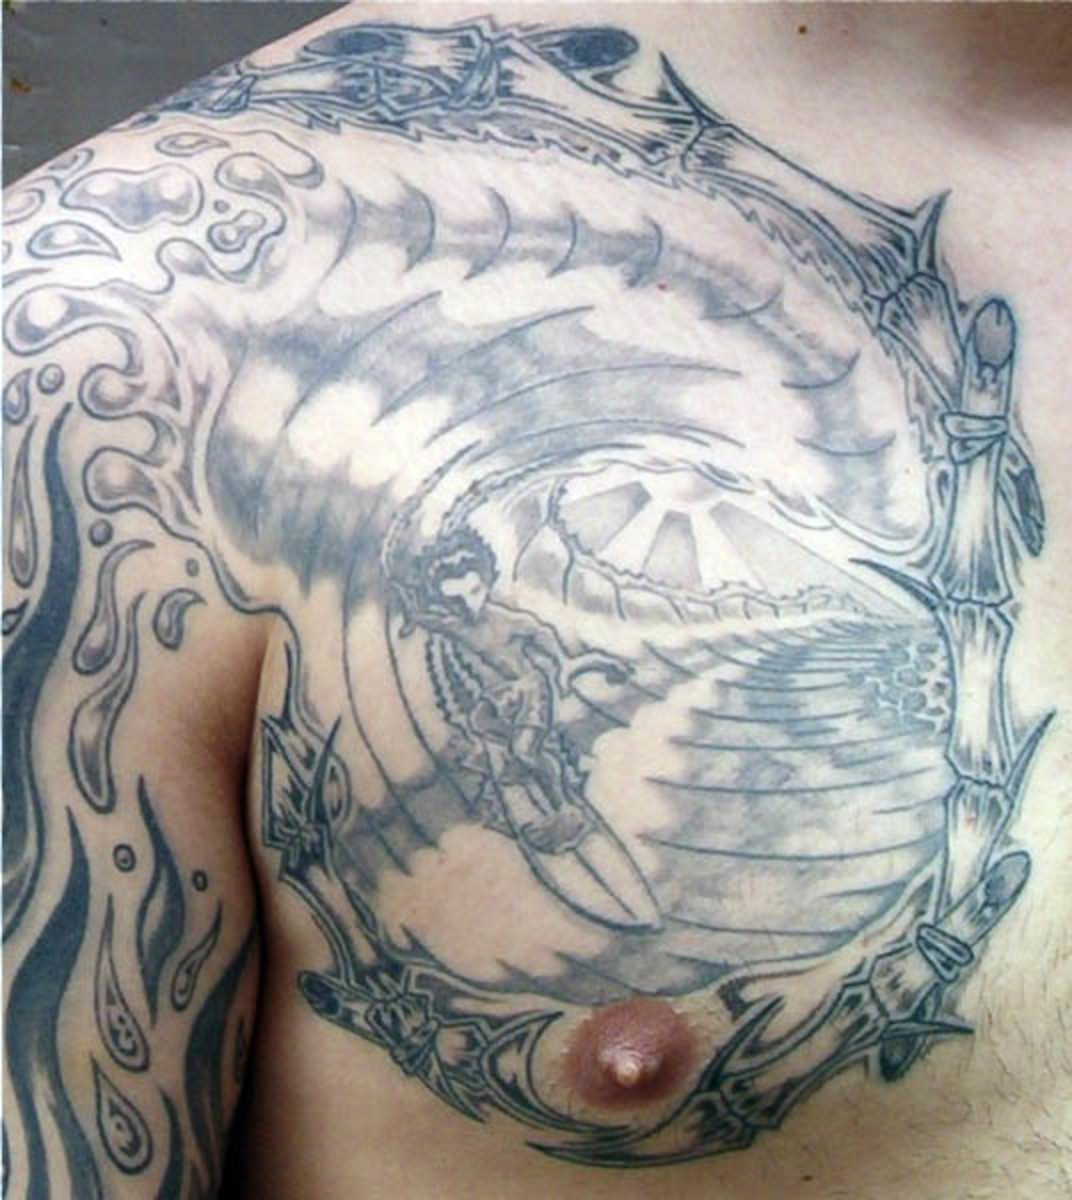 Minimalist surfer tattoo on the rib